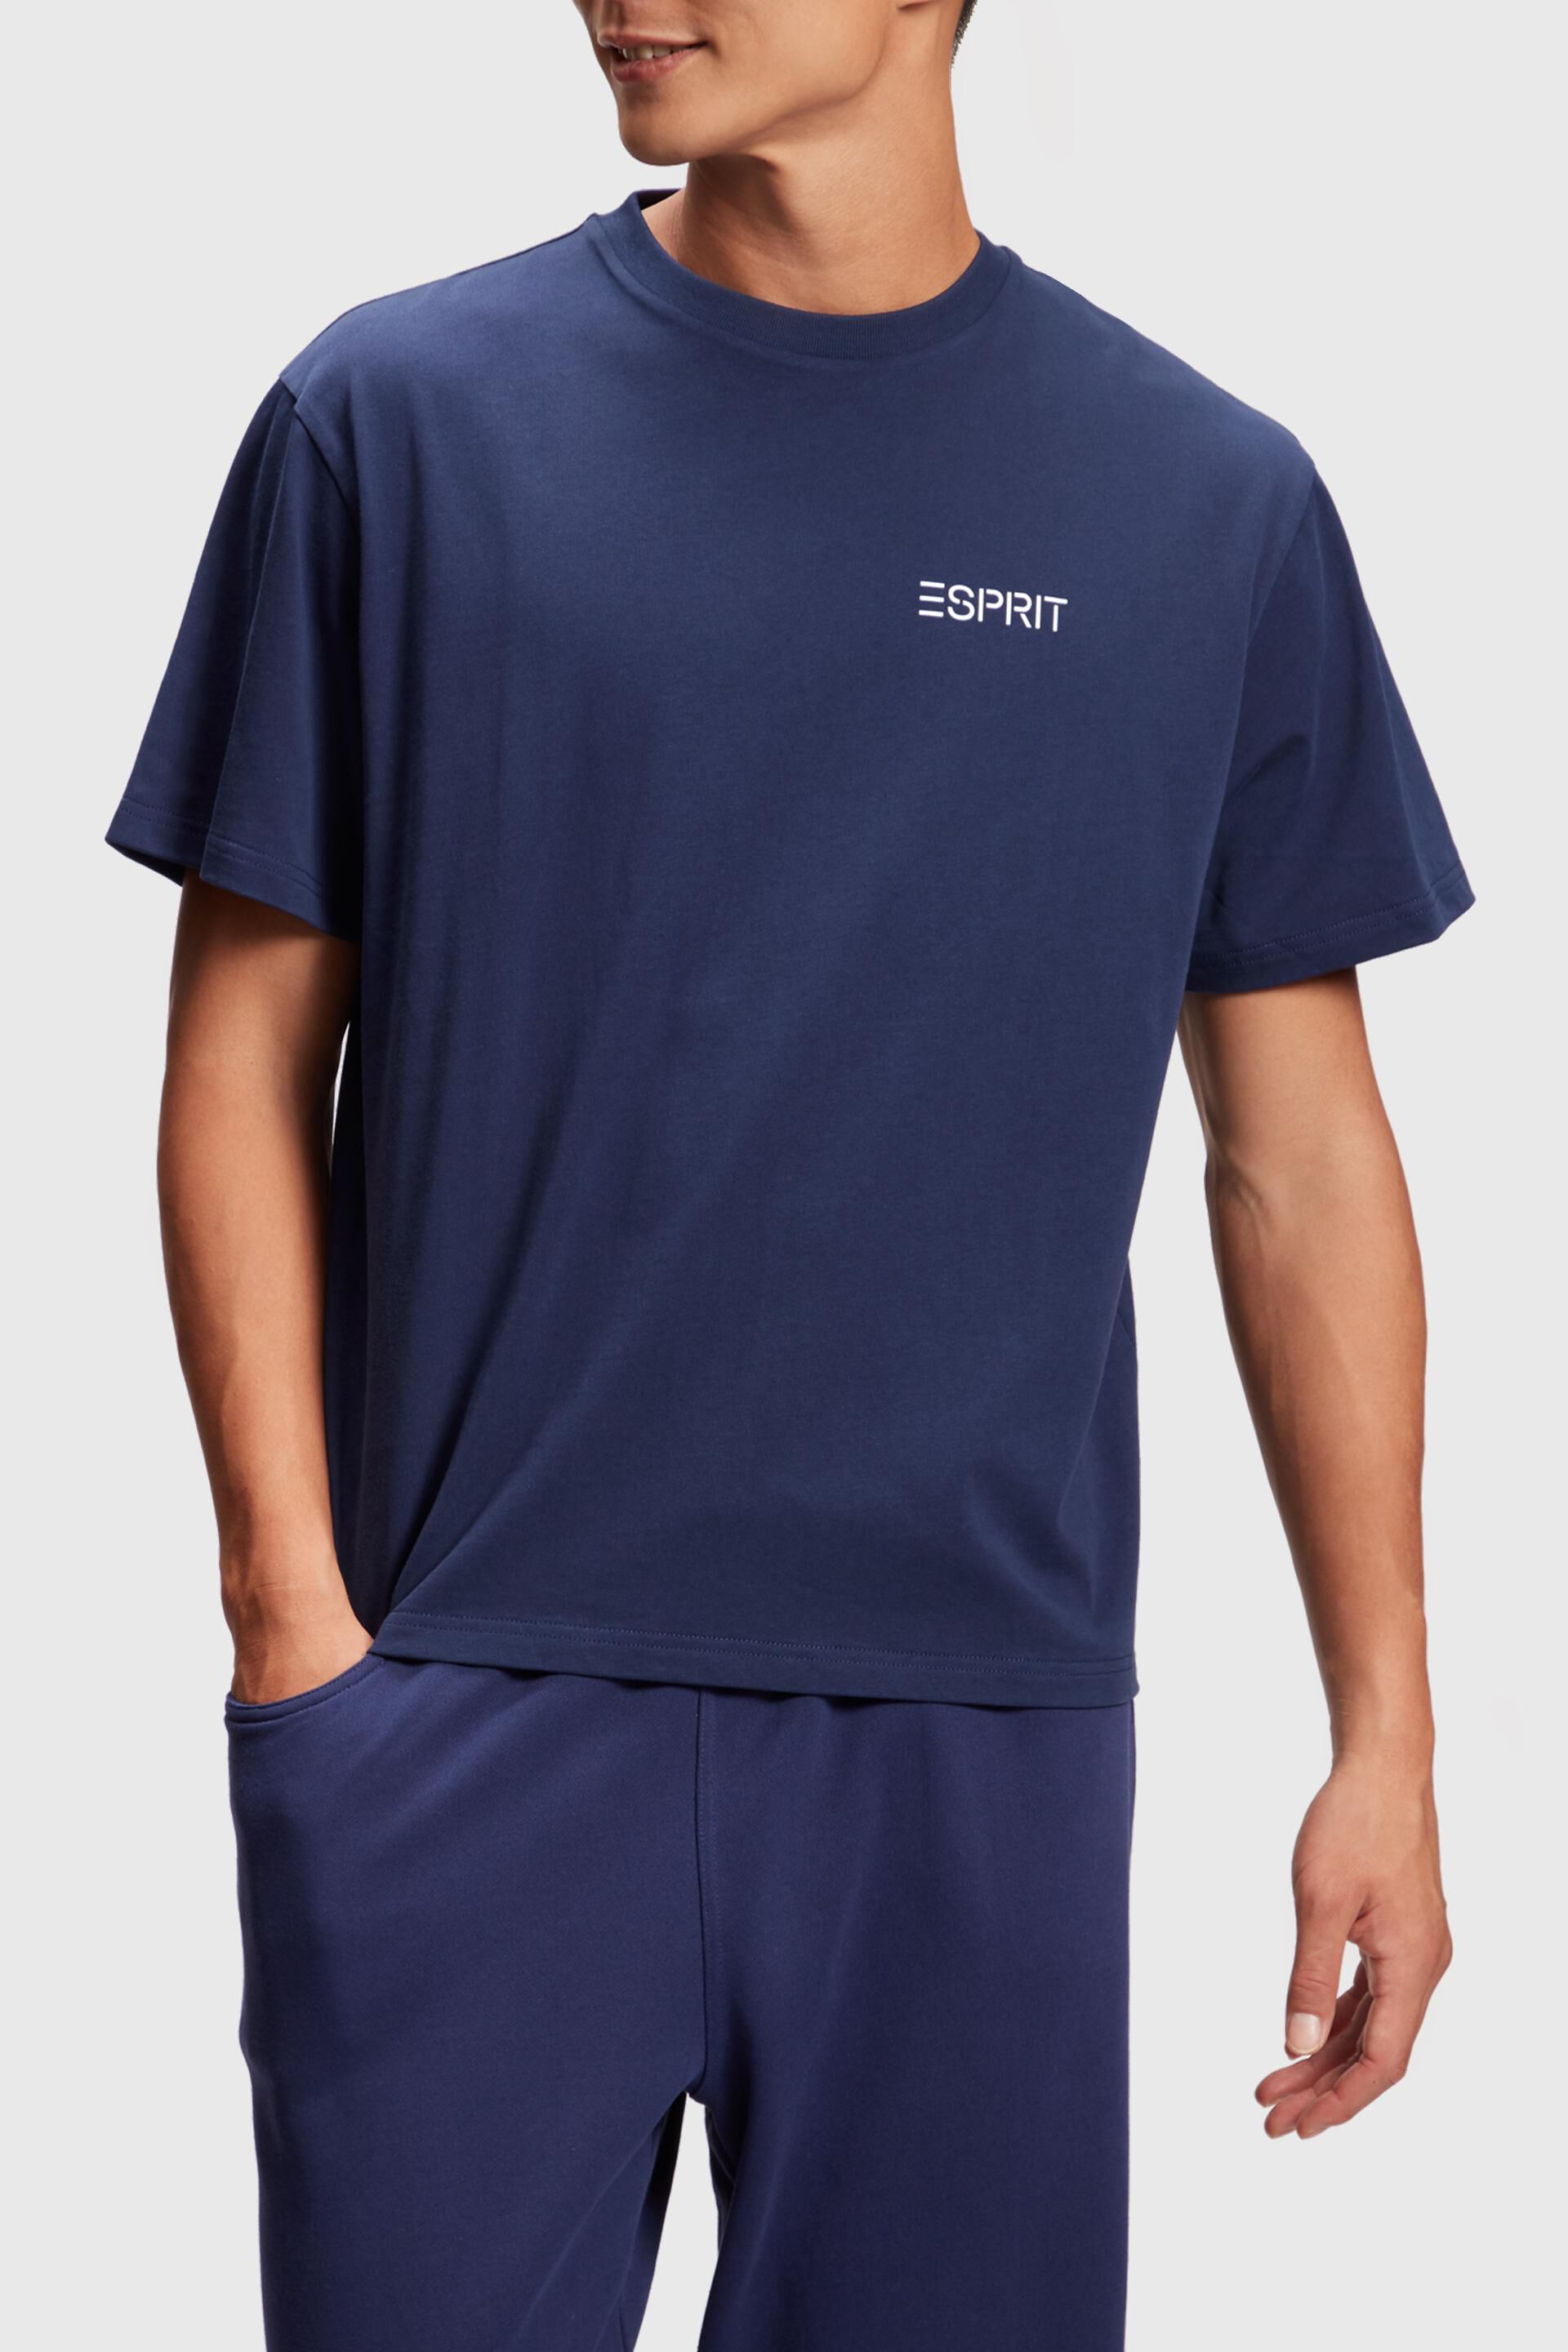 Esprit T-Shirt mit Edition-Aufdruck Seoul